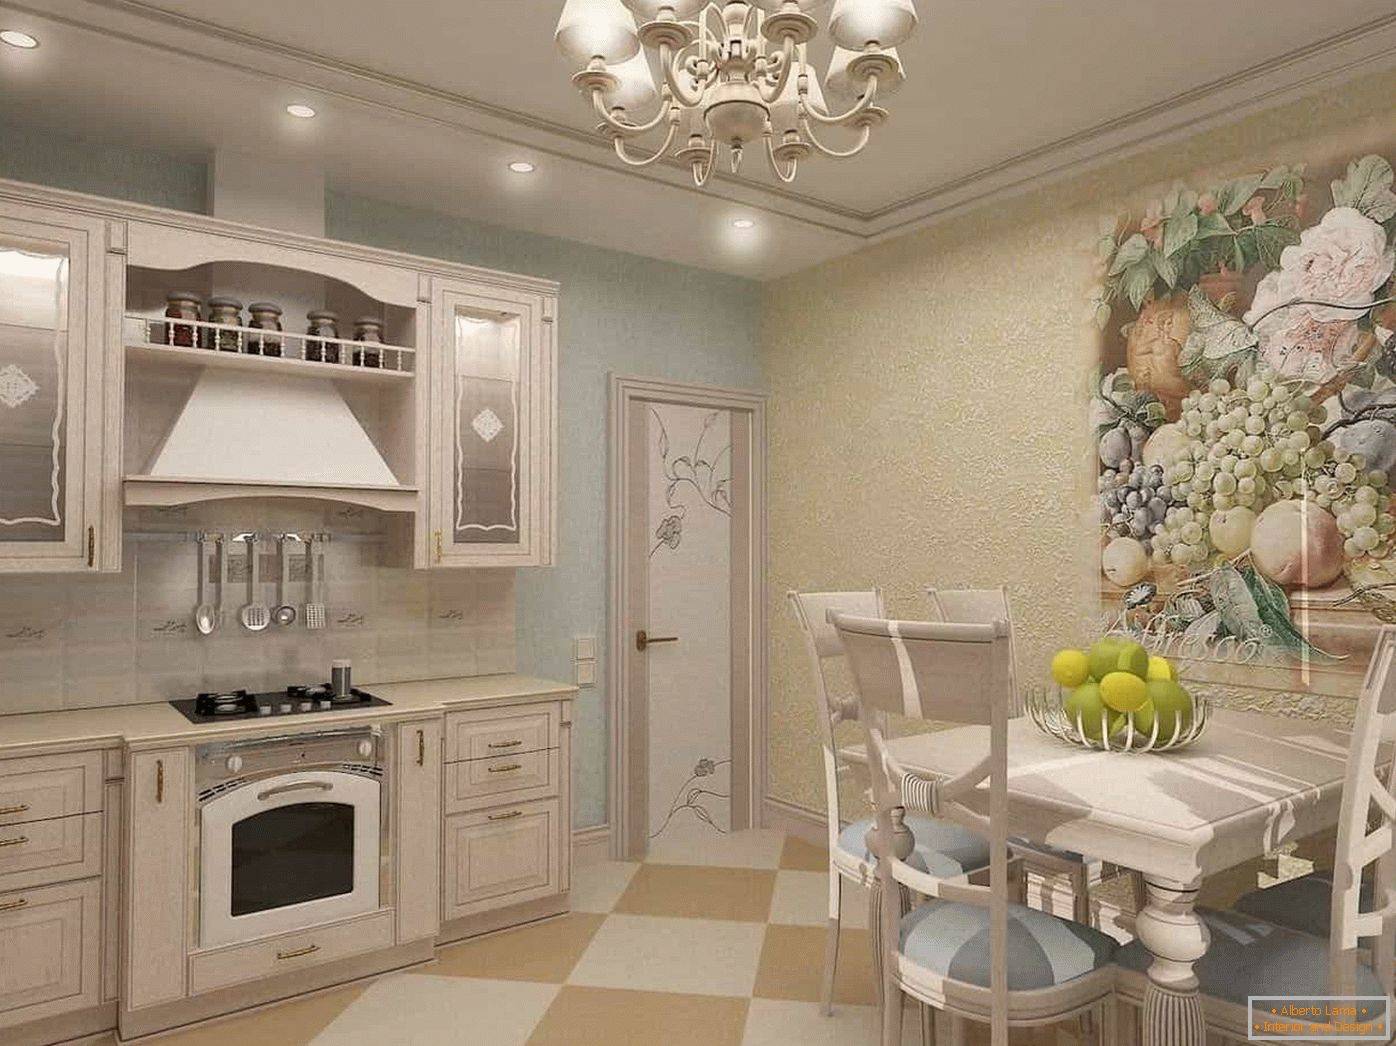 Кухня в стиле прованс | интерьер кухни в стиле прованс фото | дизайн кухни | pinedesign